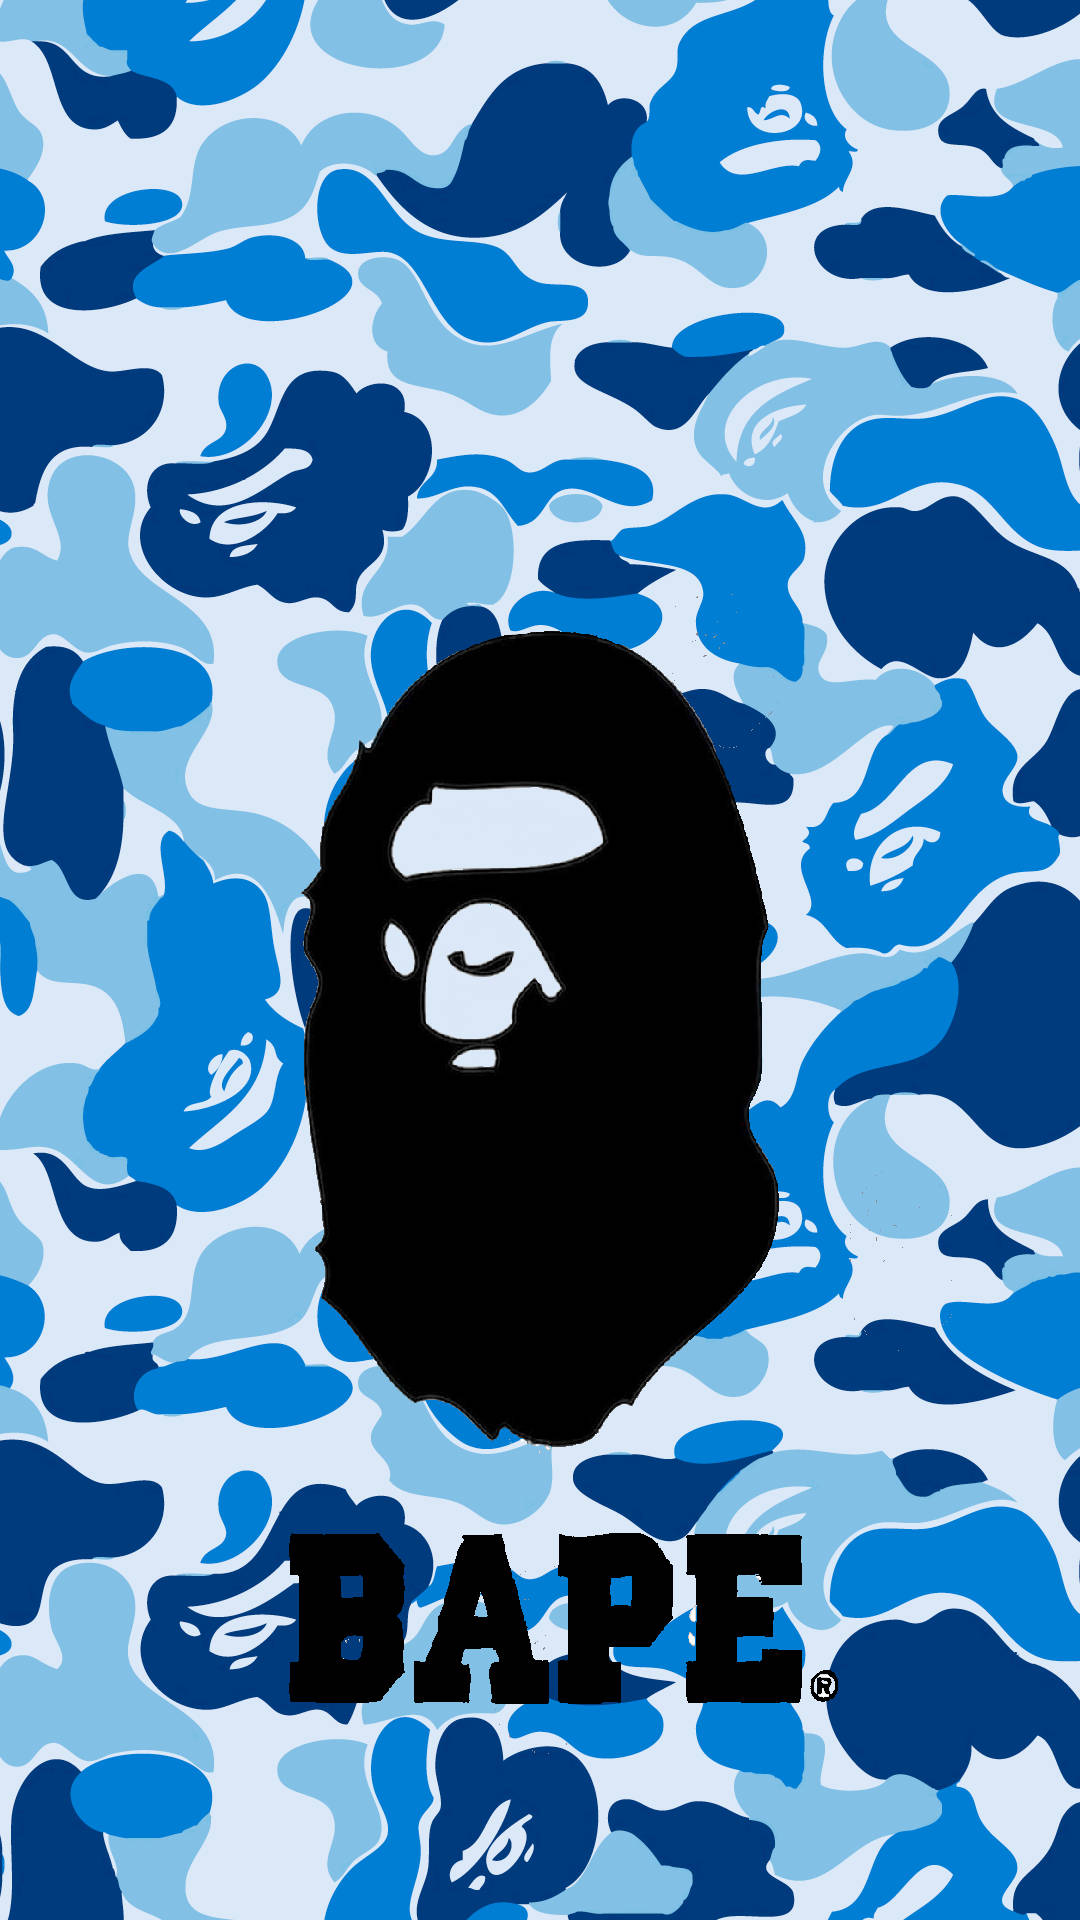 Bape Brand Logo On Blue Camouflage Background